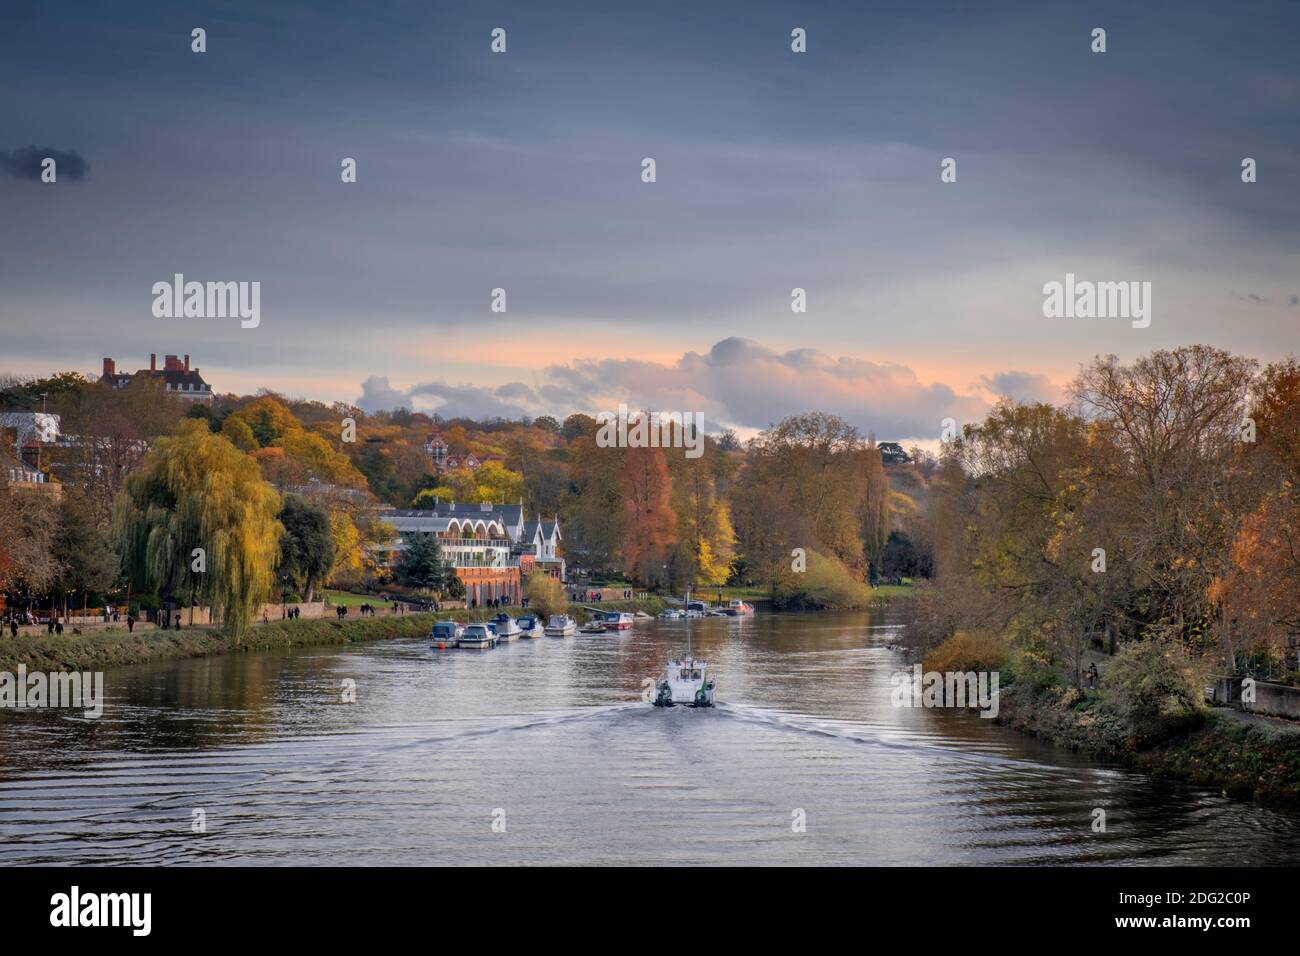 Europa, Großbritannien, London, Richmond, ein wohlhabender Wohnvorort im Westen Londons, Themse, Herbst, Boote auf dem Fluss, Bäume im Herbst, ruhige Szene Stockfoto